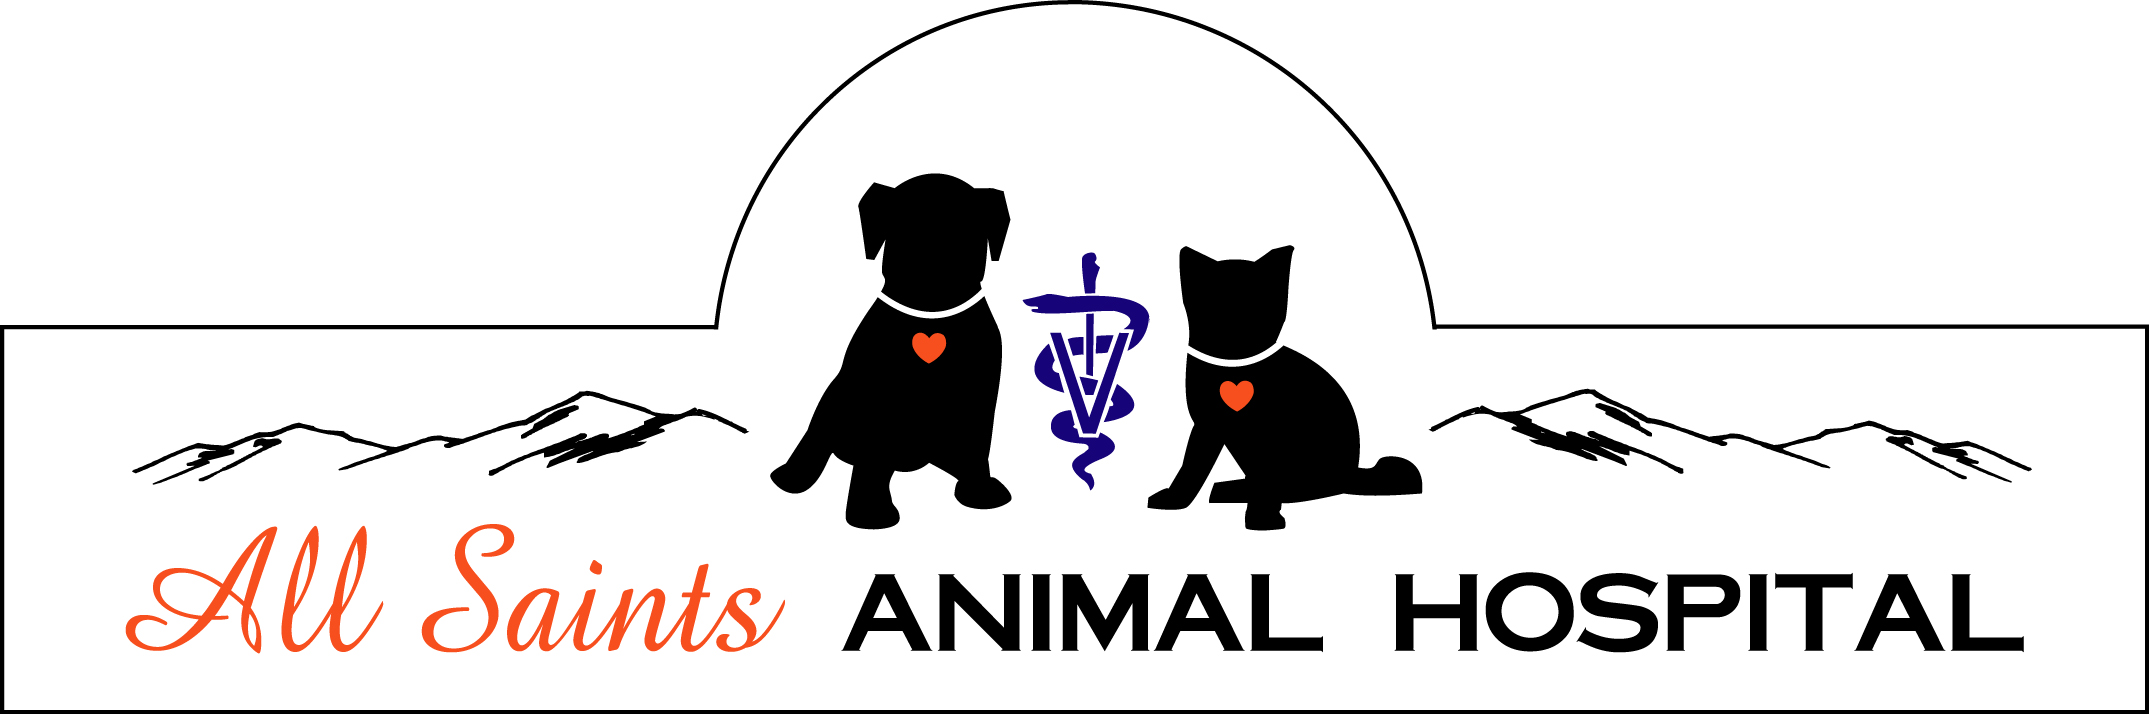 All Saints Animal Hospital